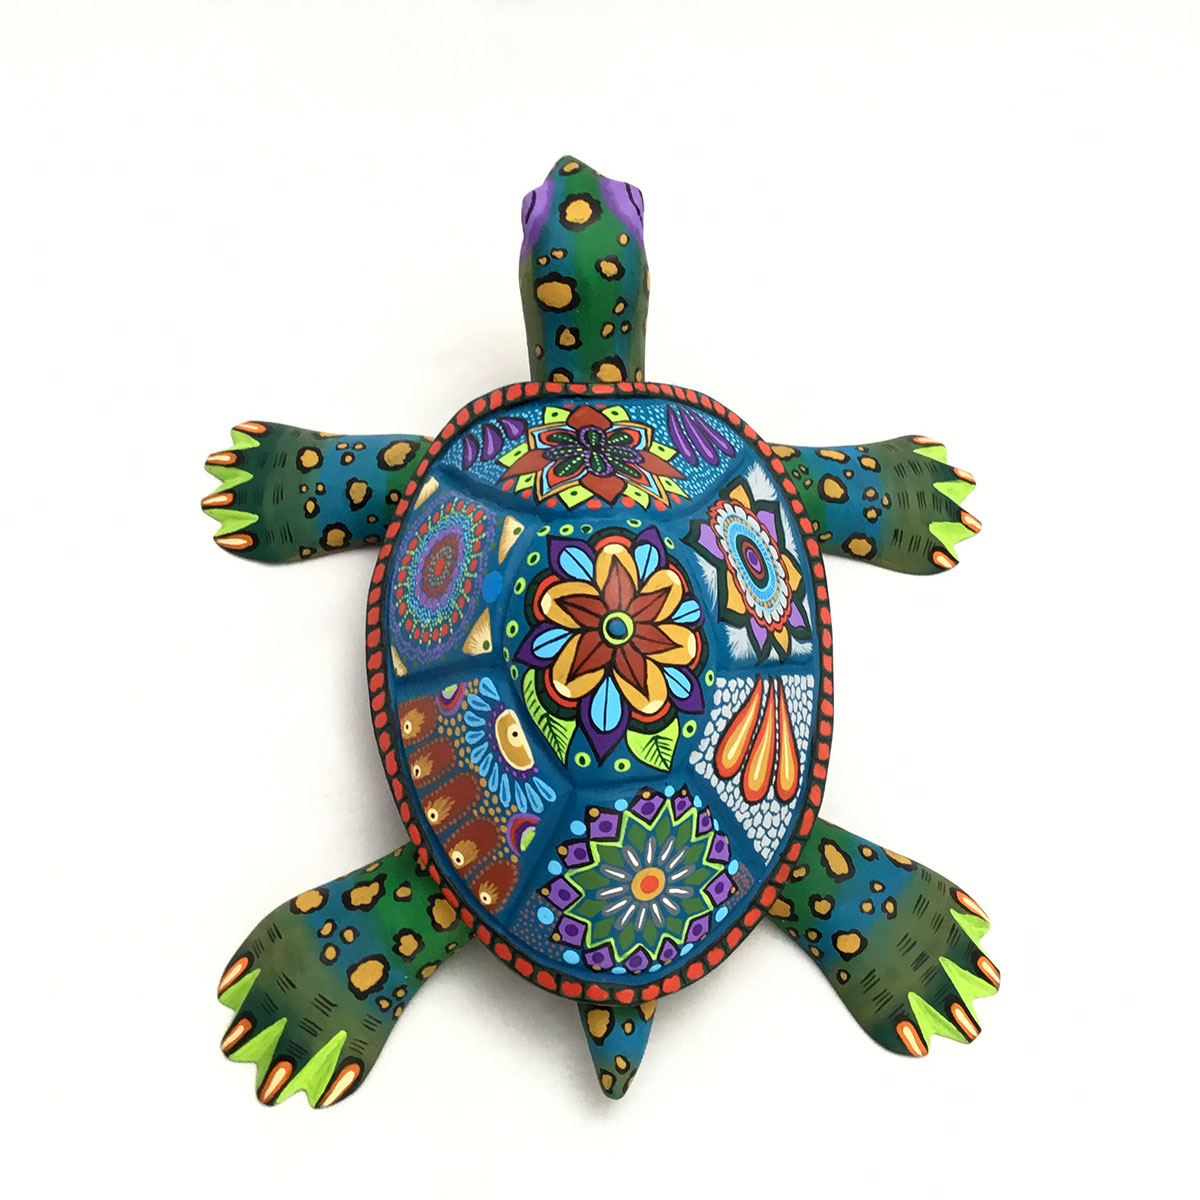 Damian & Beatriz Morales Damian & Beatriz Morales: Colorful Turtle Reptiles & Amphibians